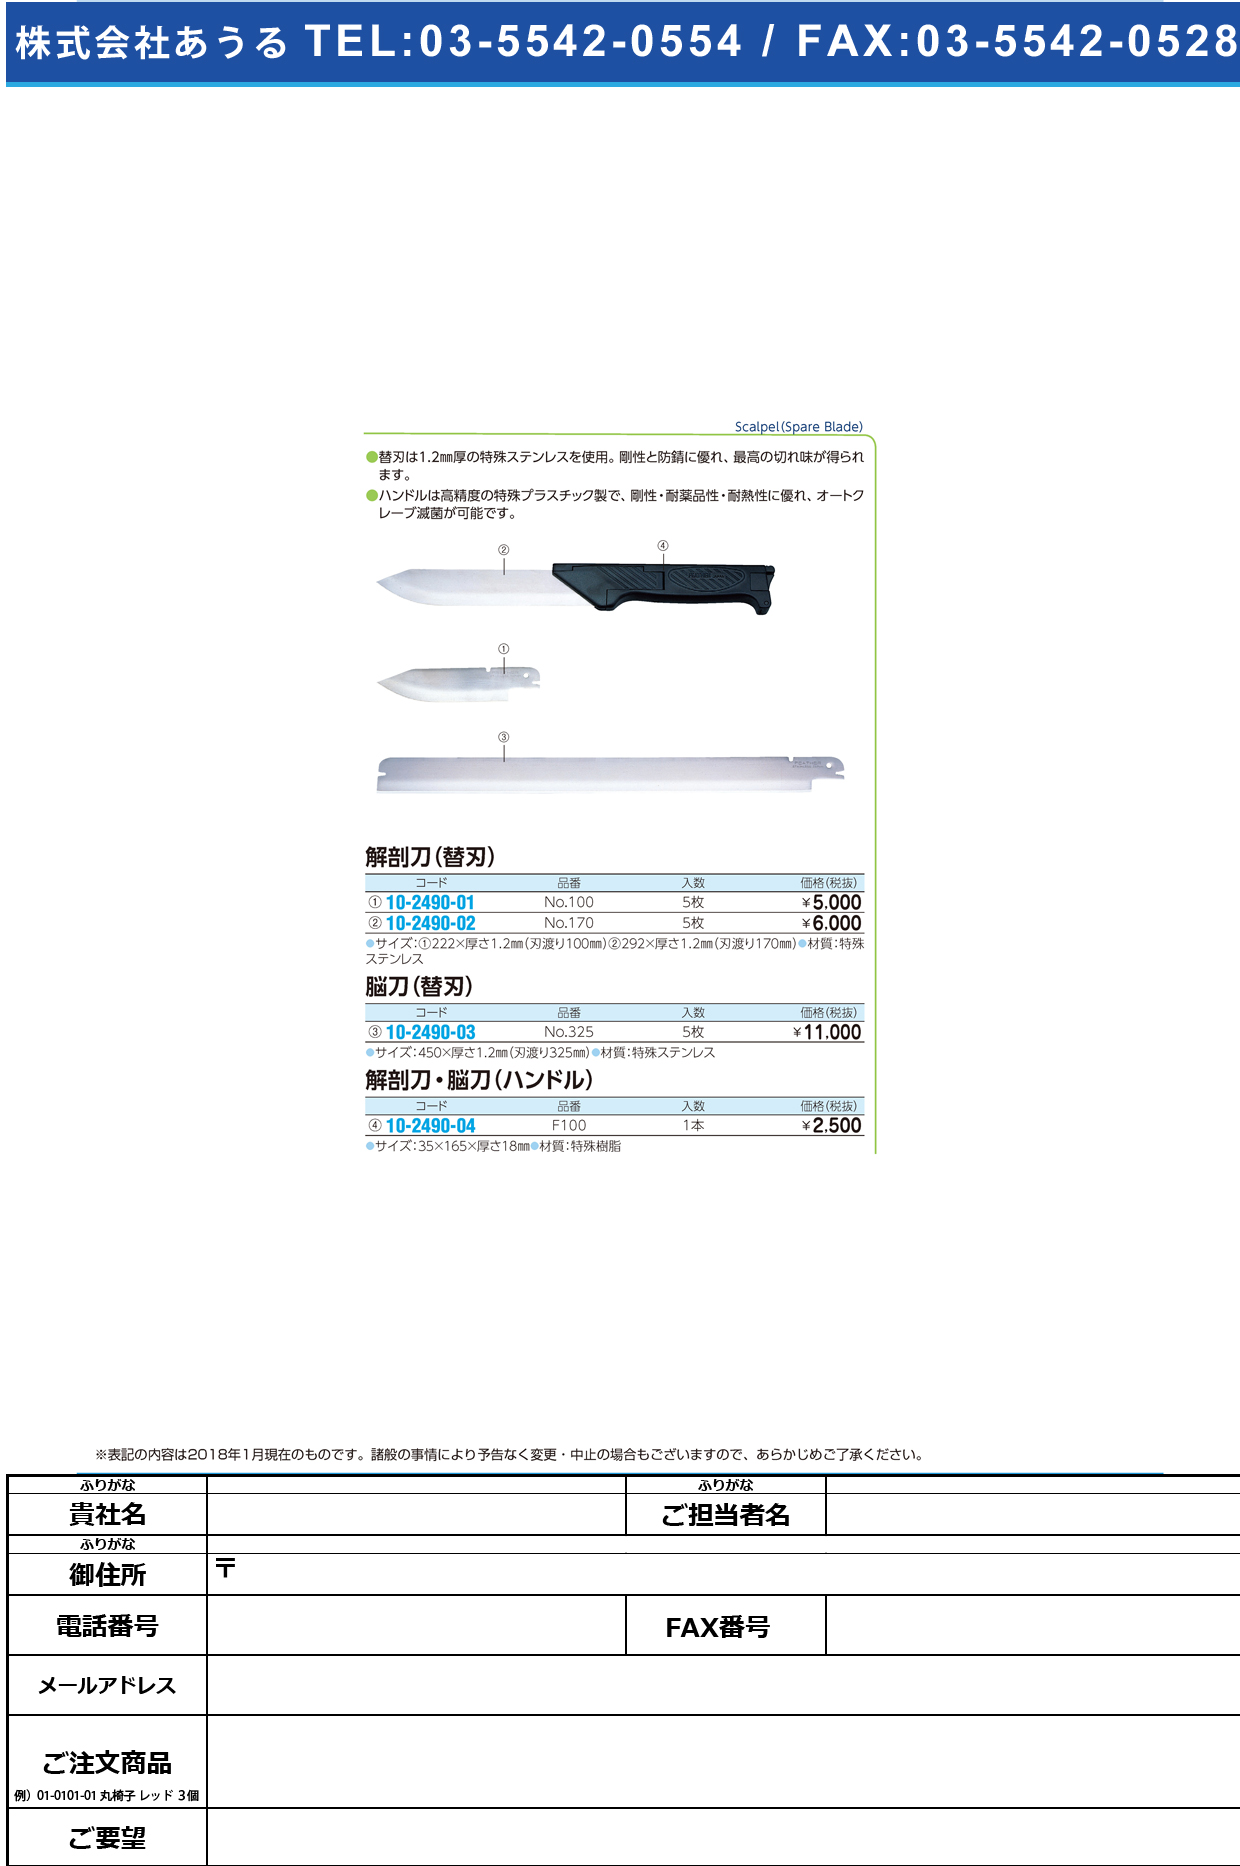 (10-2490-02)フェザー解剖刀替刃 NO.170(5ﾏｲｲﾘ) ﾌｪｻﾞｰｶｲﾎﾞｳﾄｳｶｴﾊﾞ【1箱単位】【2019年カタログ商品】